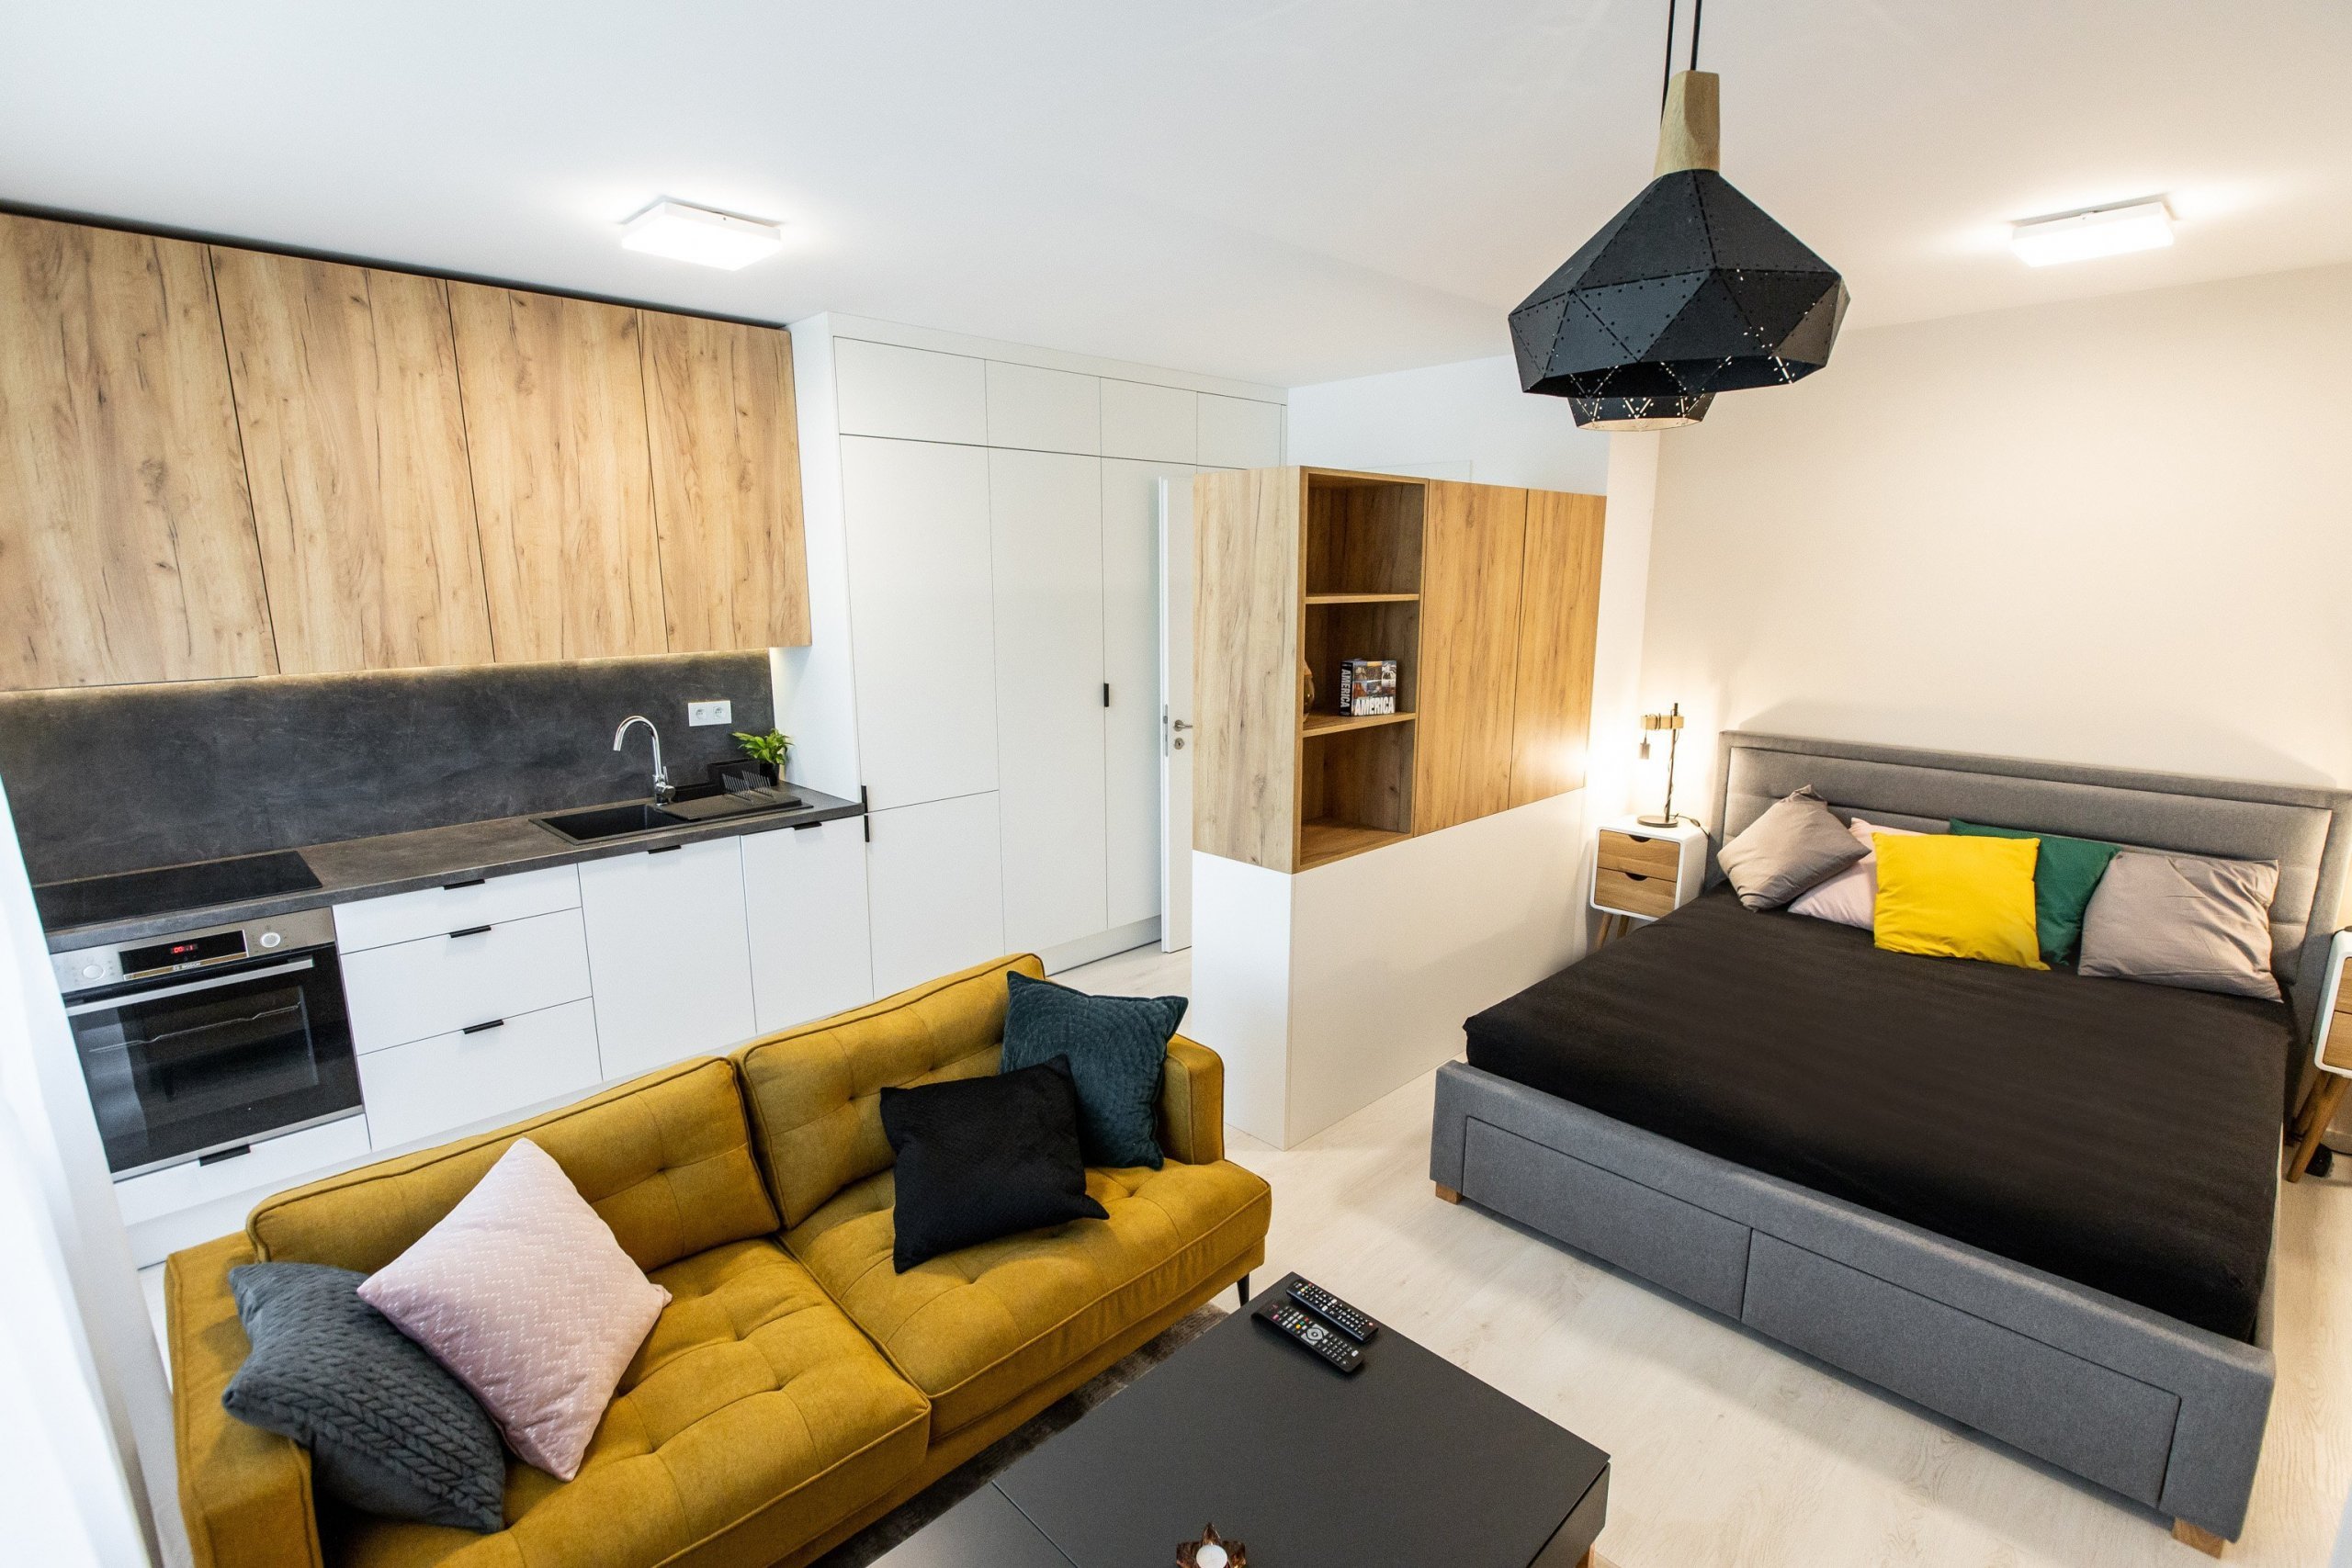 Apartmán v developerskom projekte Malé Krasňany, ktorý poníma obývaciu izbu, spálňu, aj kuchyňu v jednom priestore, no napriek tomu je táto realizácia krásna a…